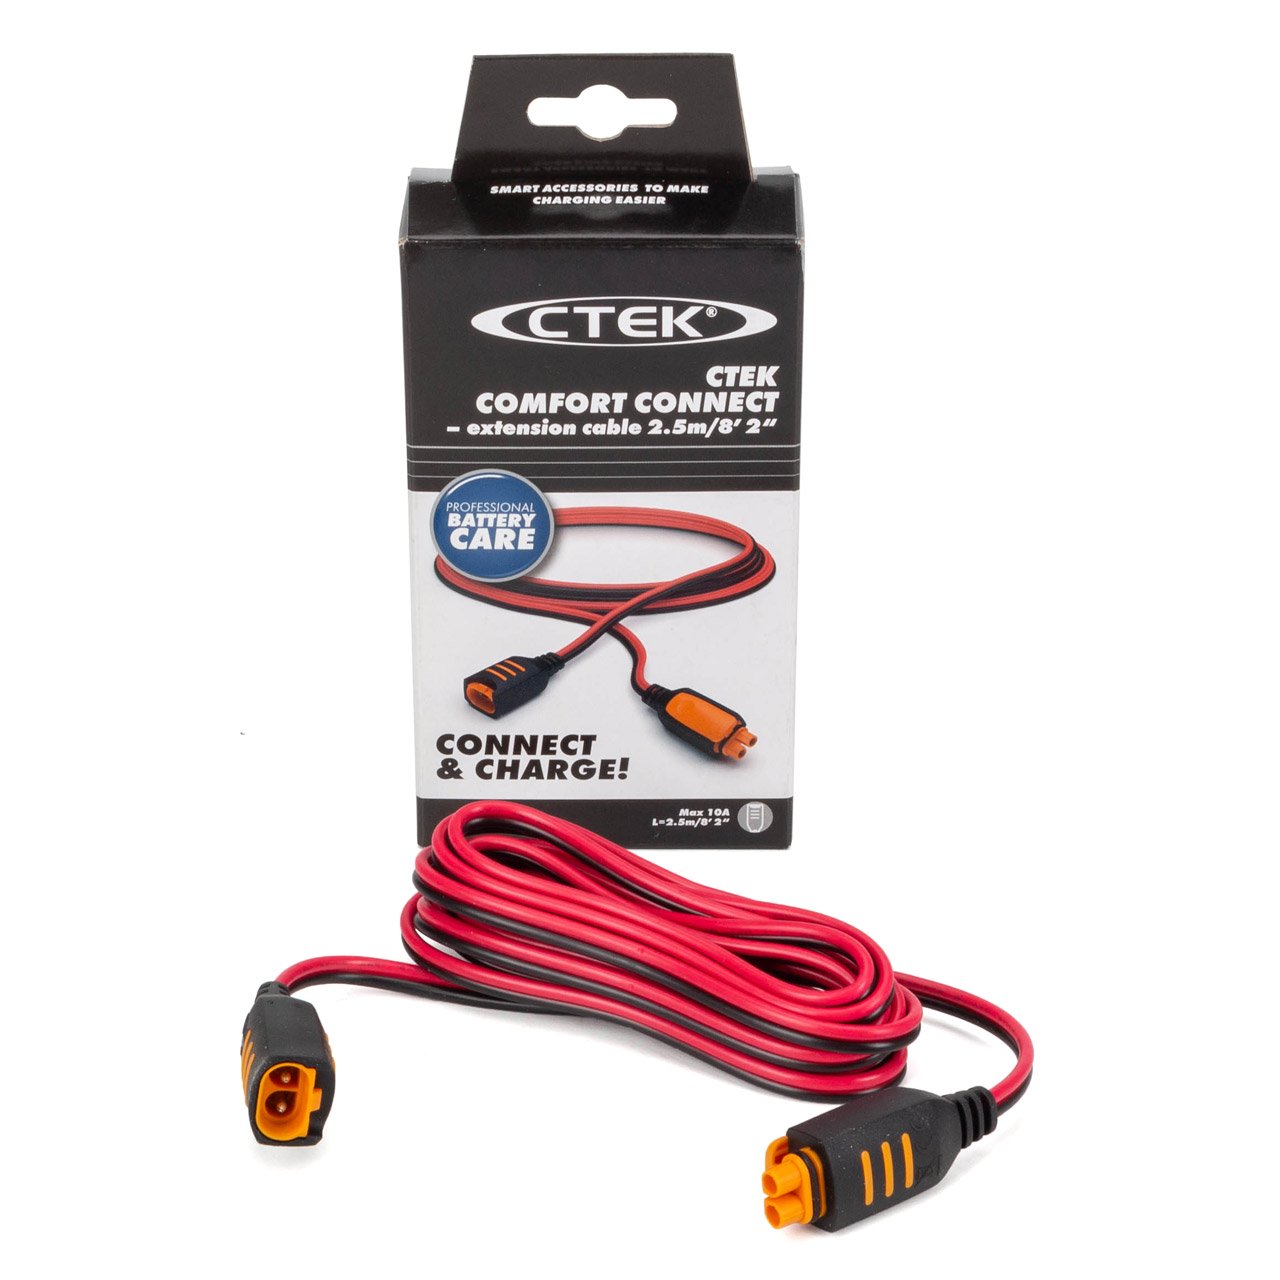 CTEK 56-304 Comfort Connect Verlängerungskabel Kabel Batterieladegerät 2,5m bis 10A